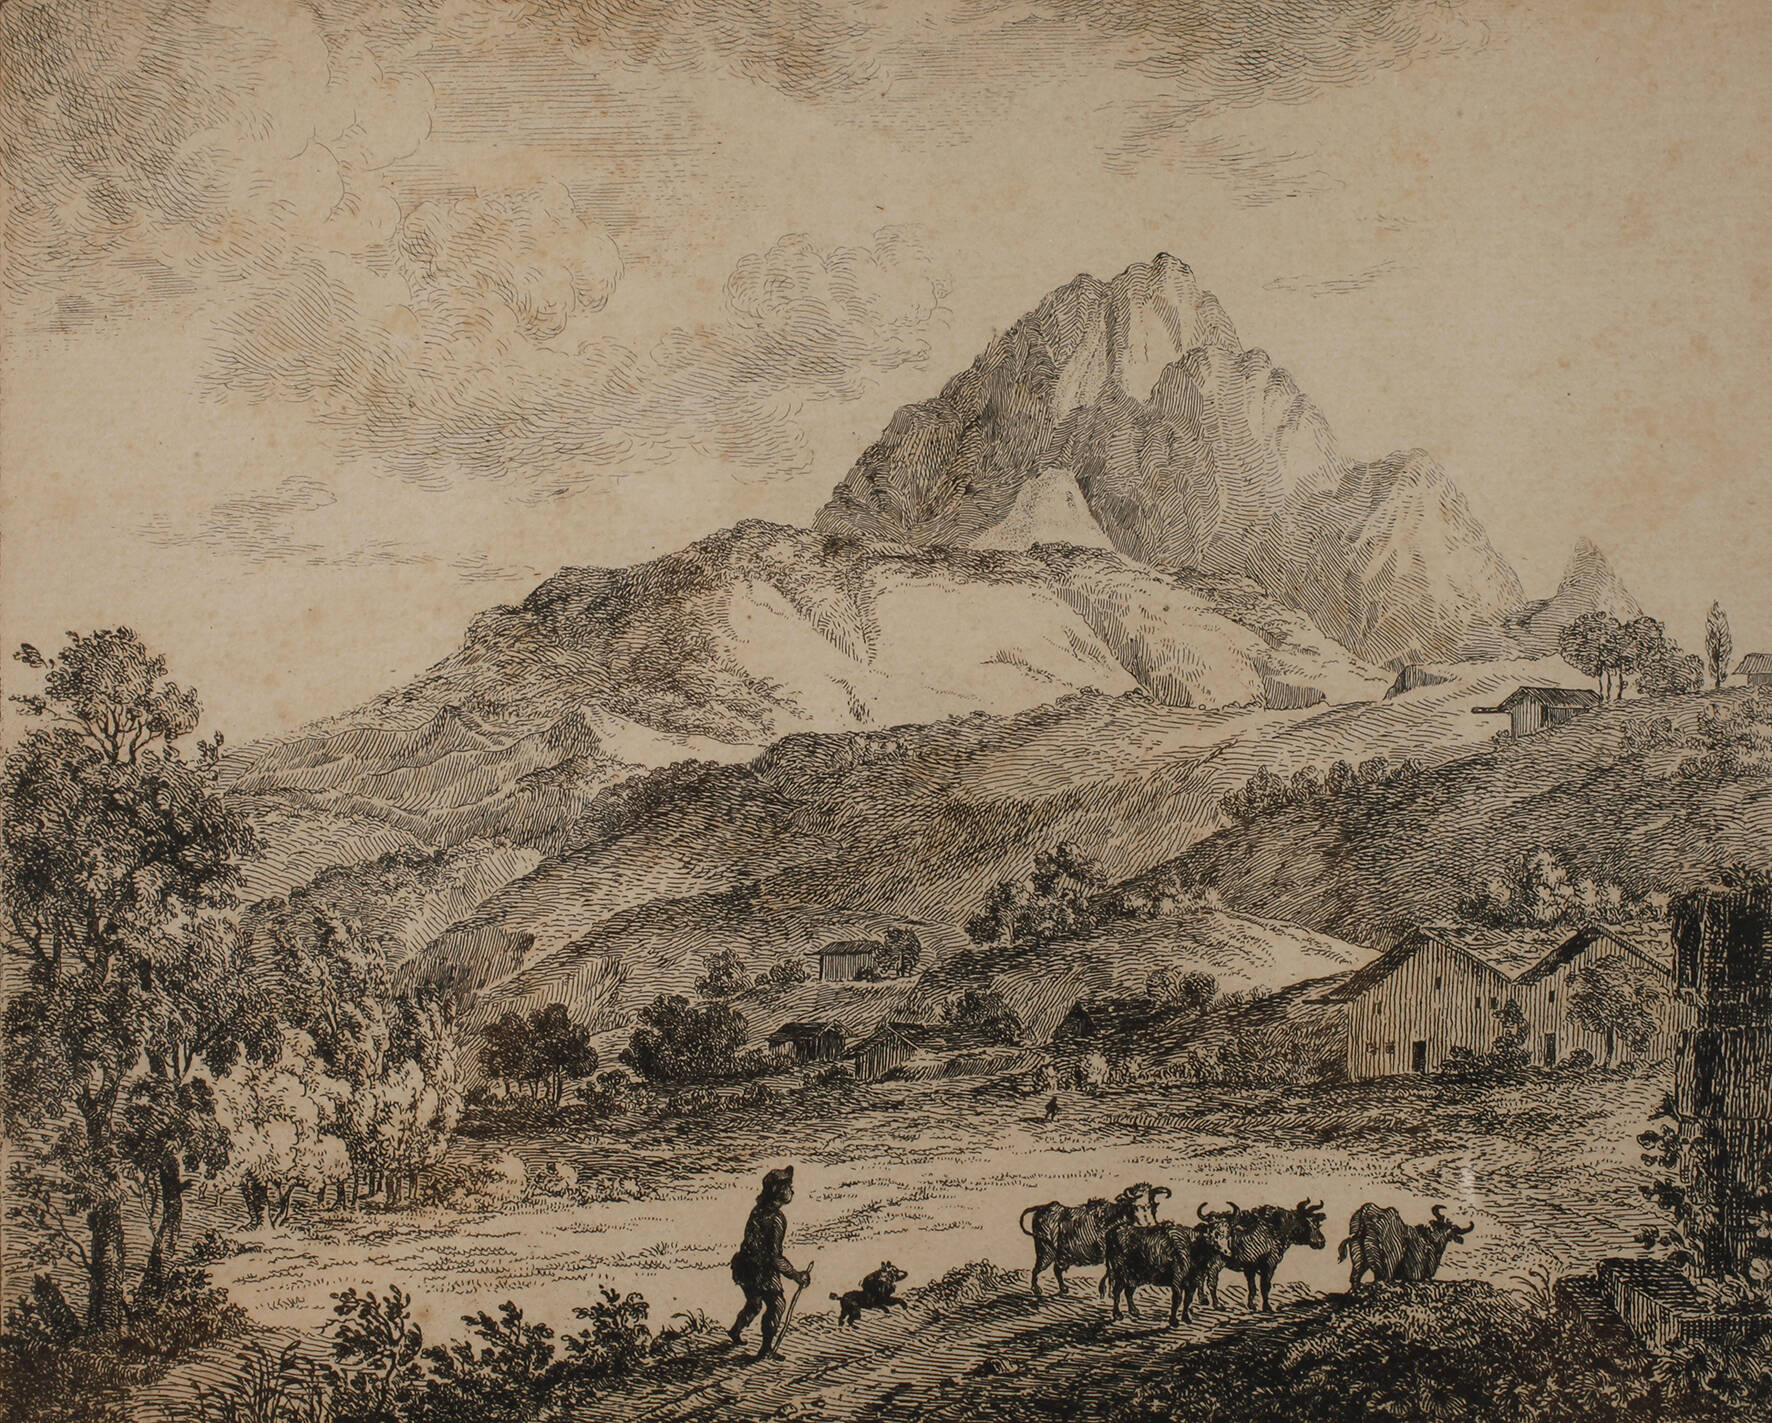 Stephan von Stengel, "Der Wetterstein bei Mittenwald"